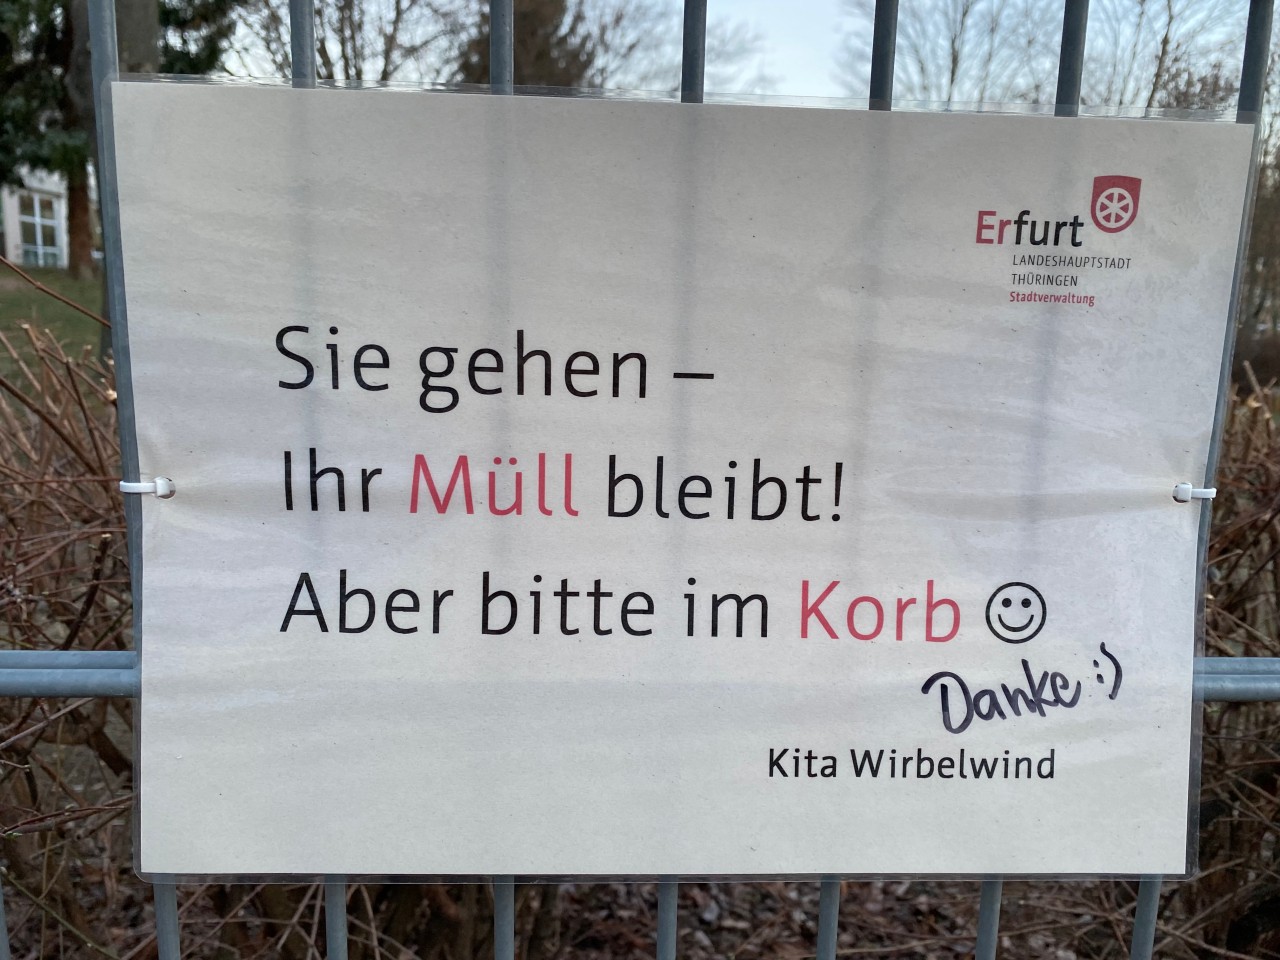 Hat dir das Schild an der Kita in Erfurt auch schon ein Lächeln ins Gesicht gezaubert?